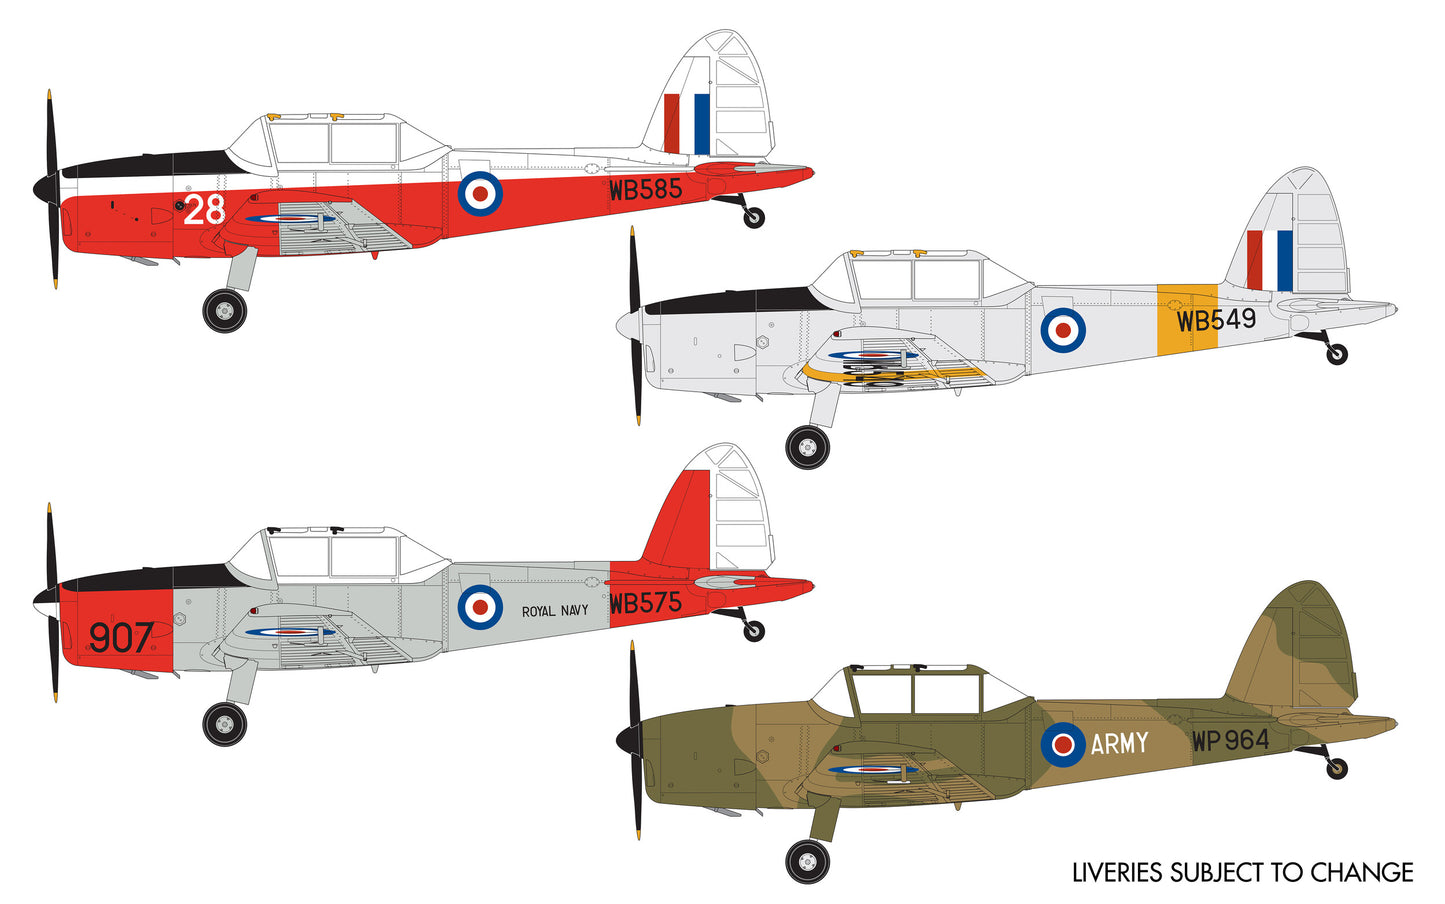 Airfix 1/48th scale de Havilland Chipmunk T.10